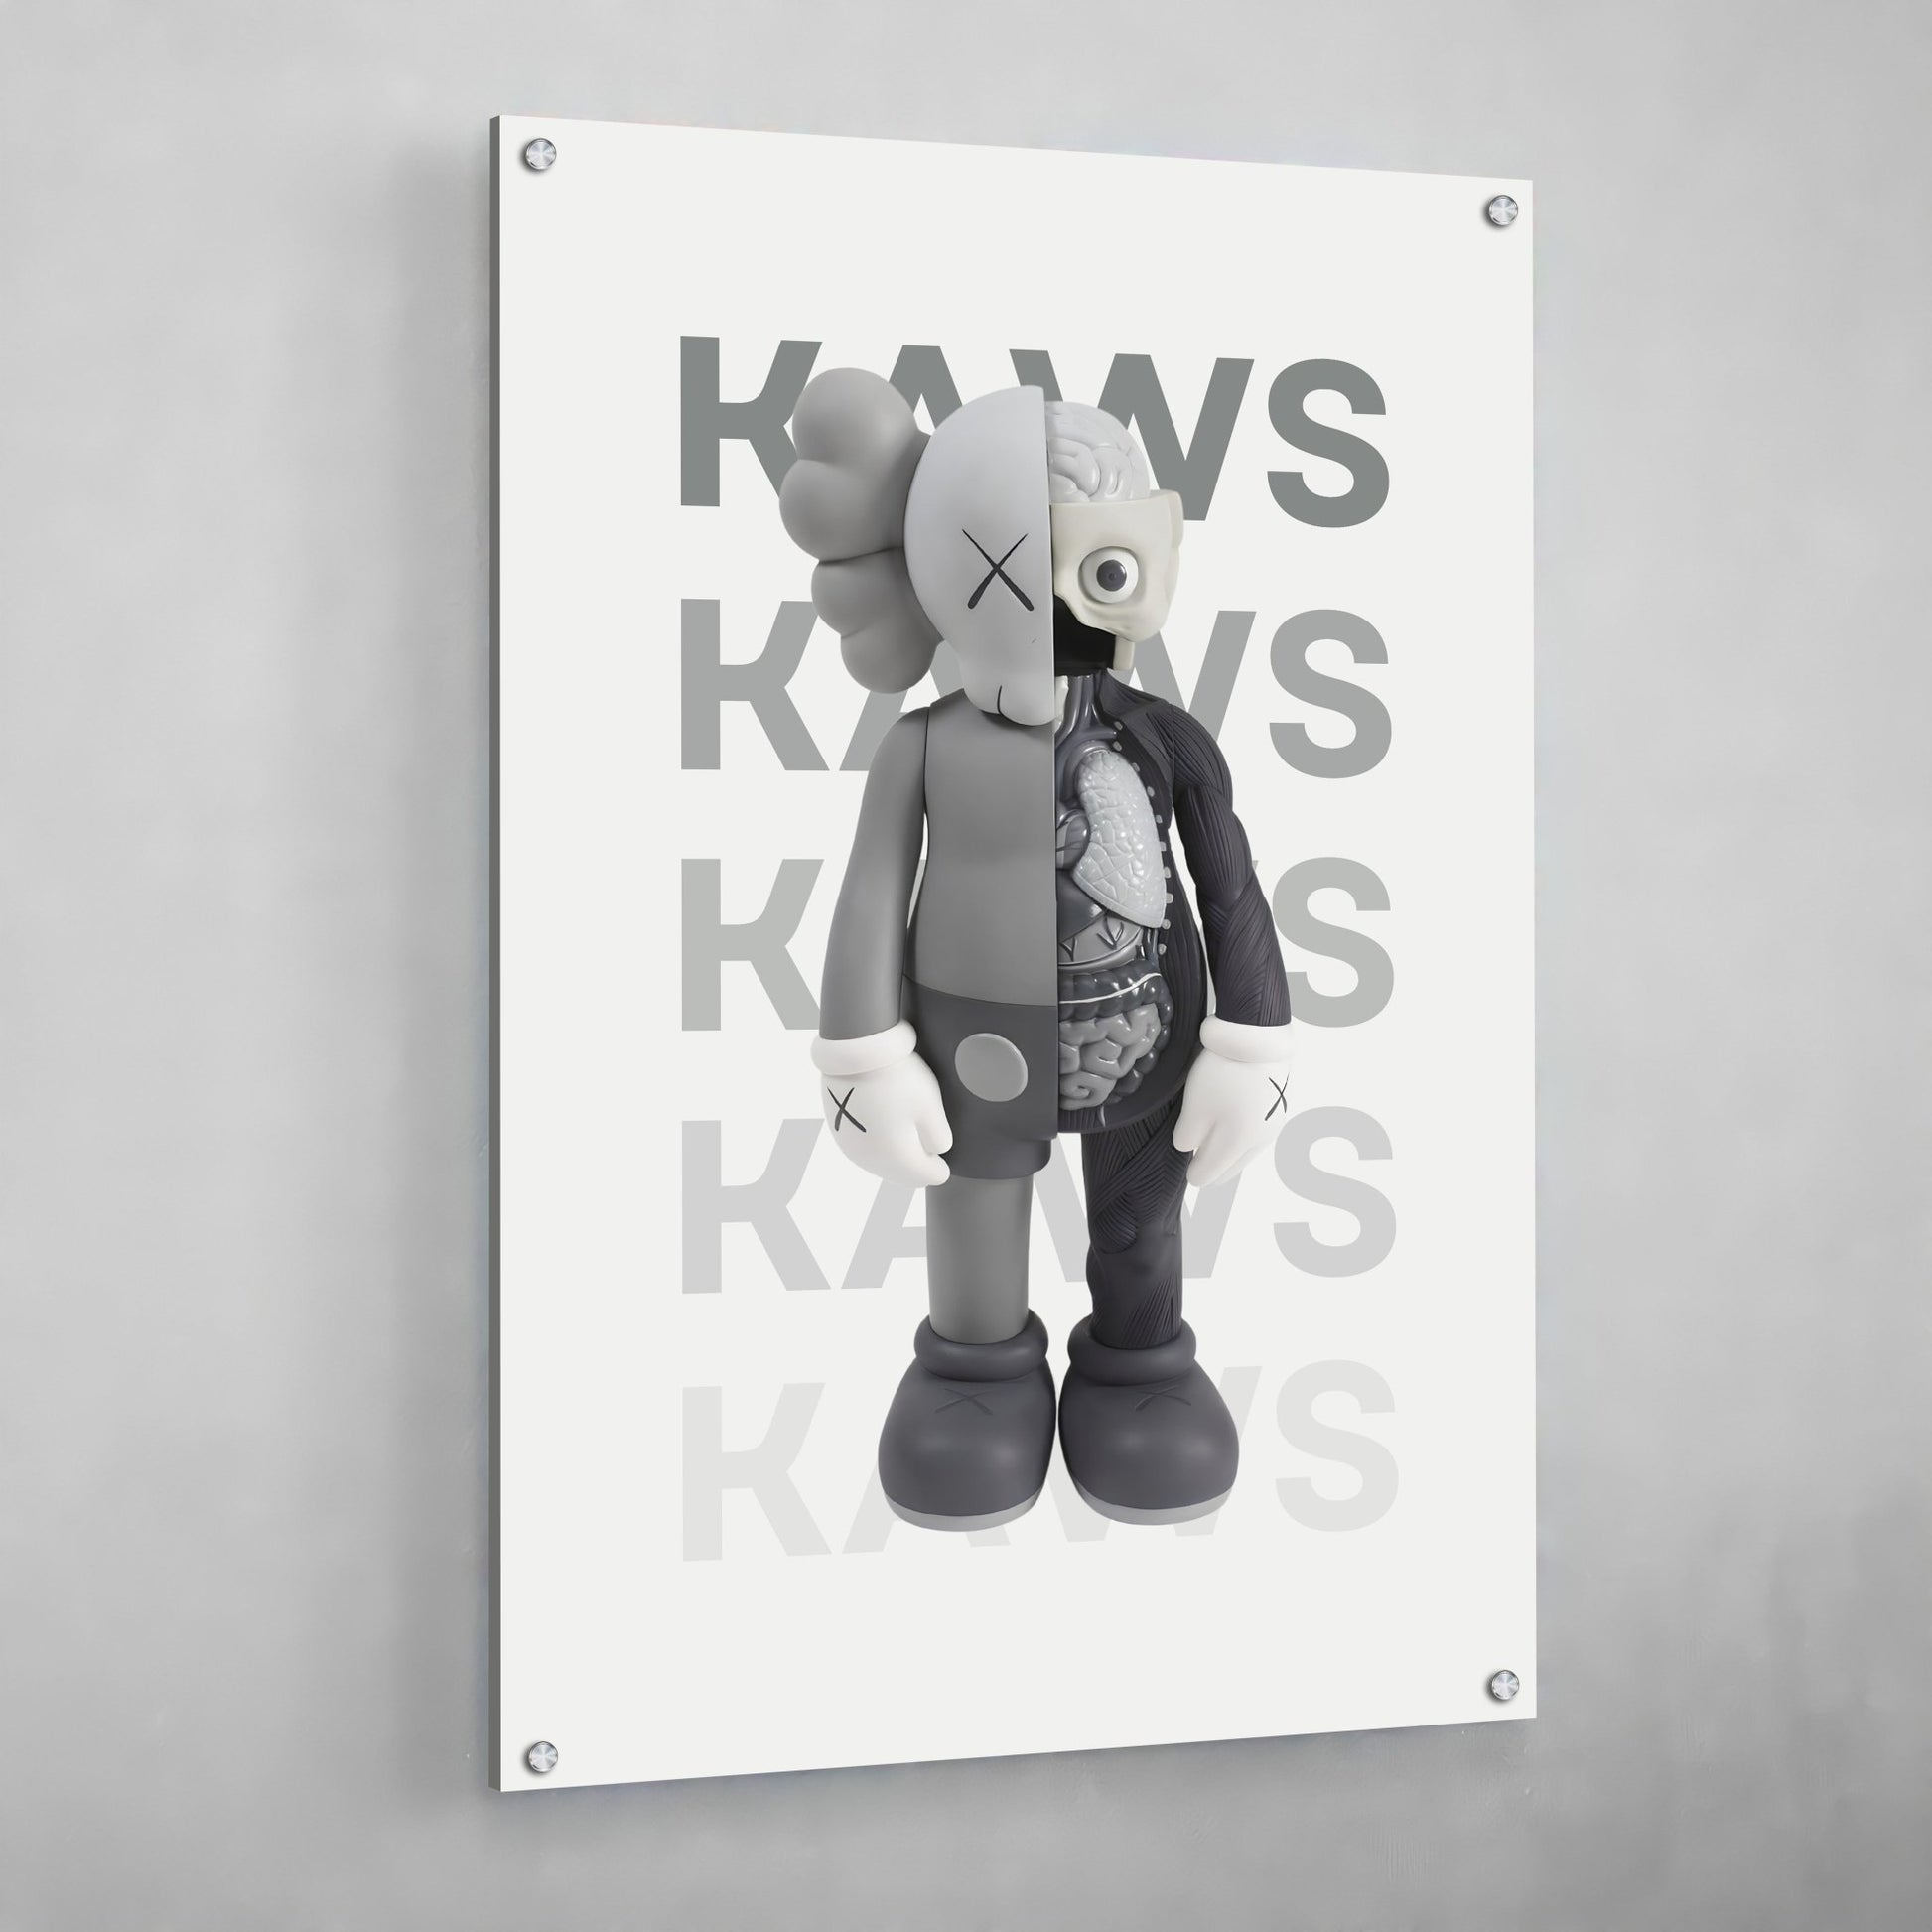 KAWS Poster Set of 3, Printables Minimalist Hypebeast Kaws Figure